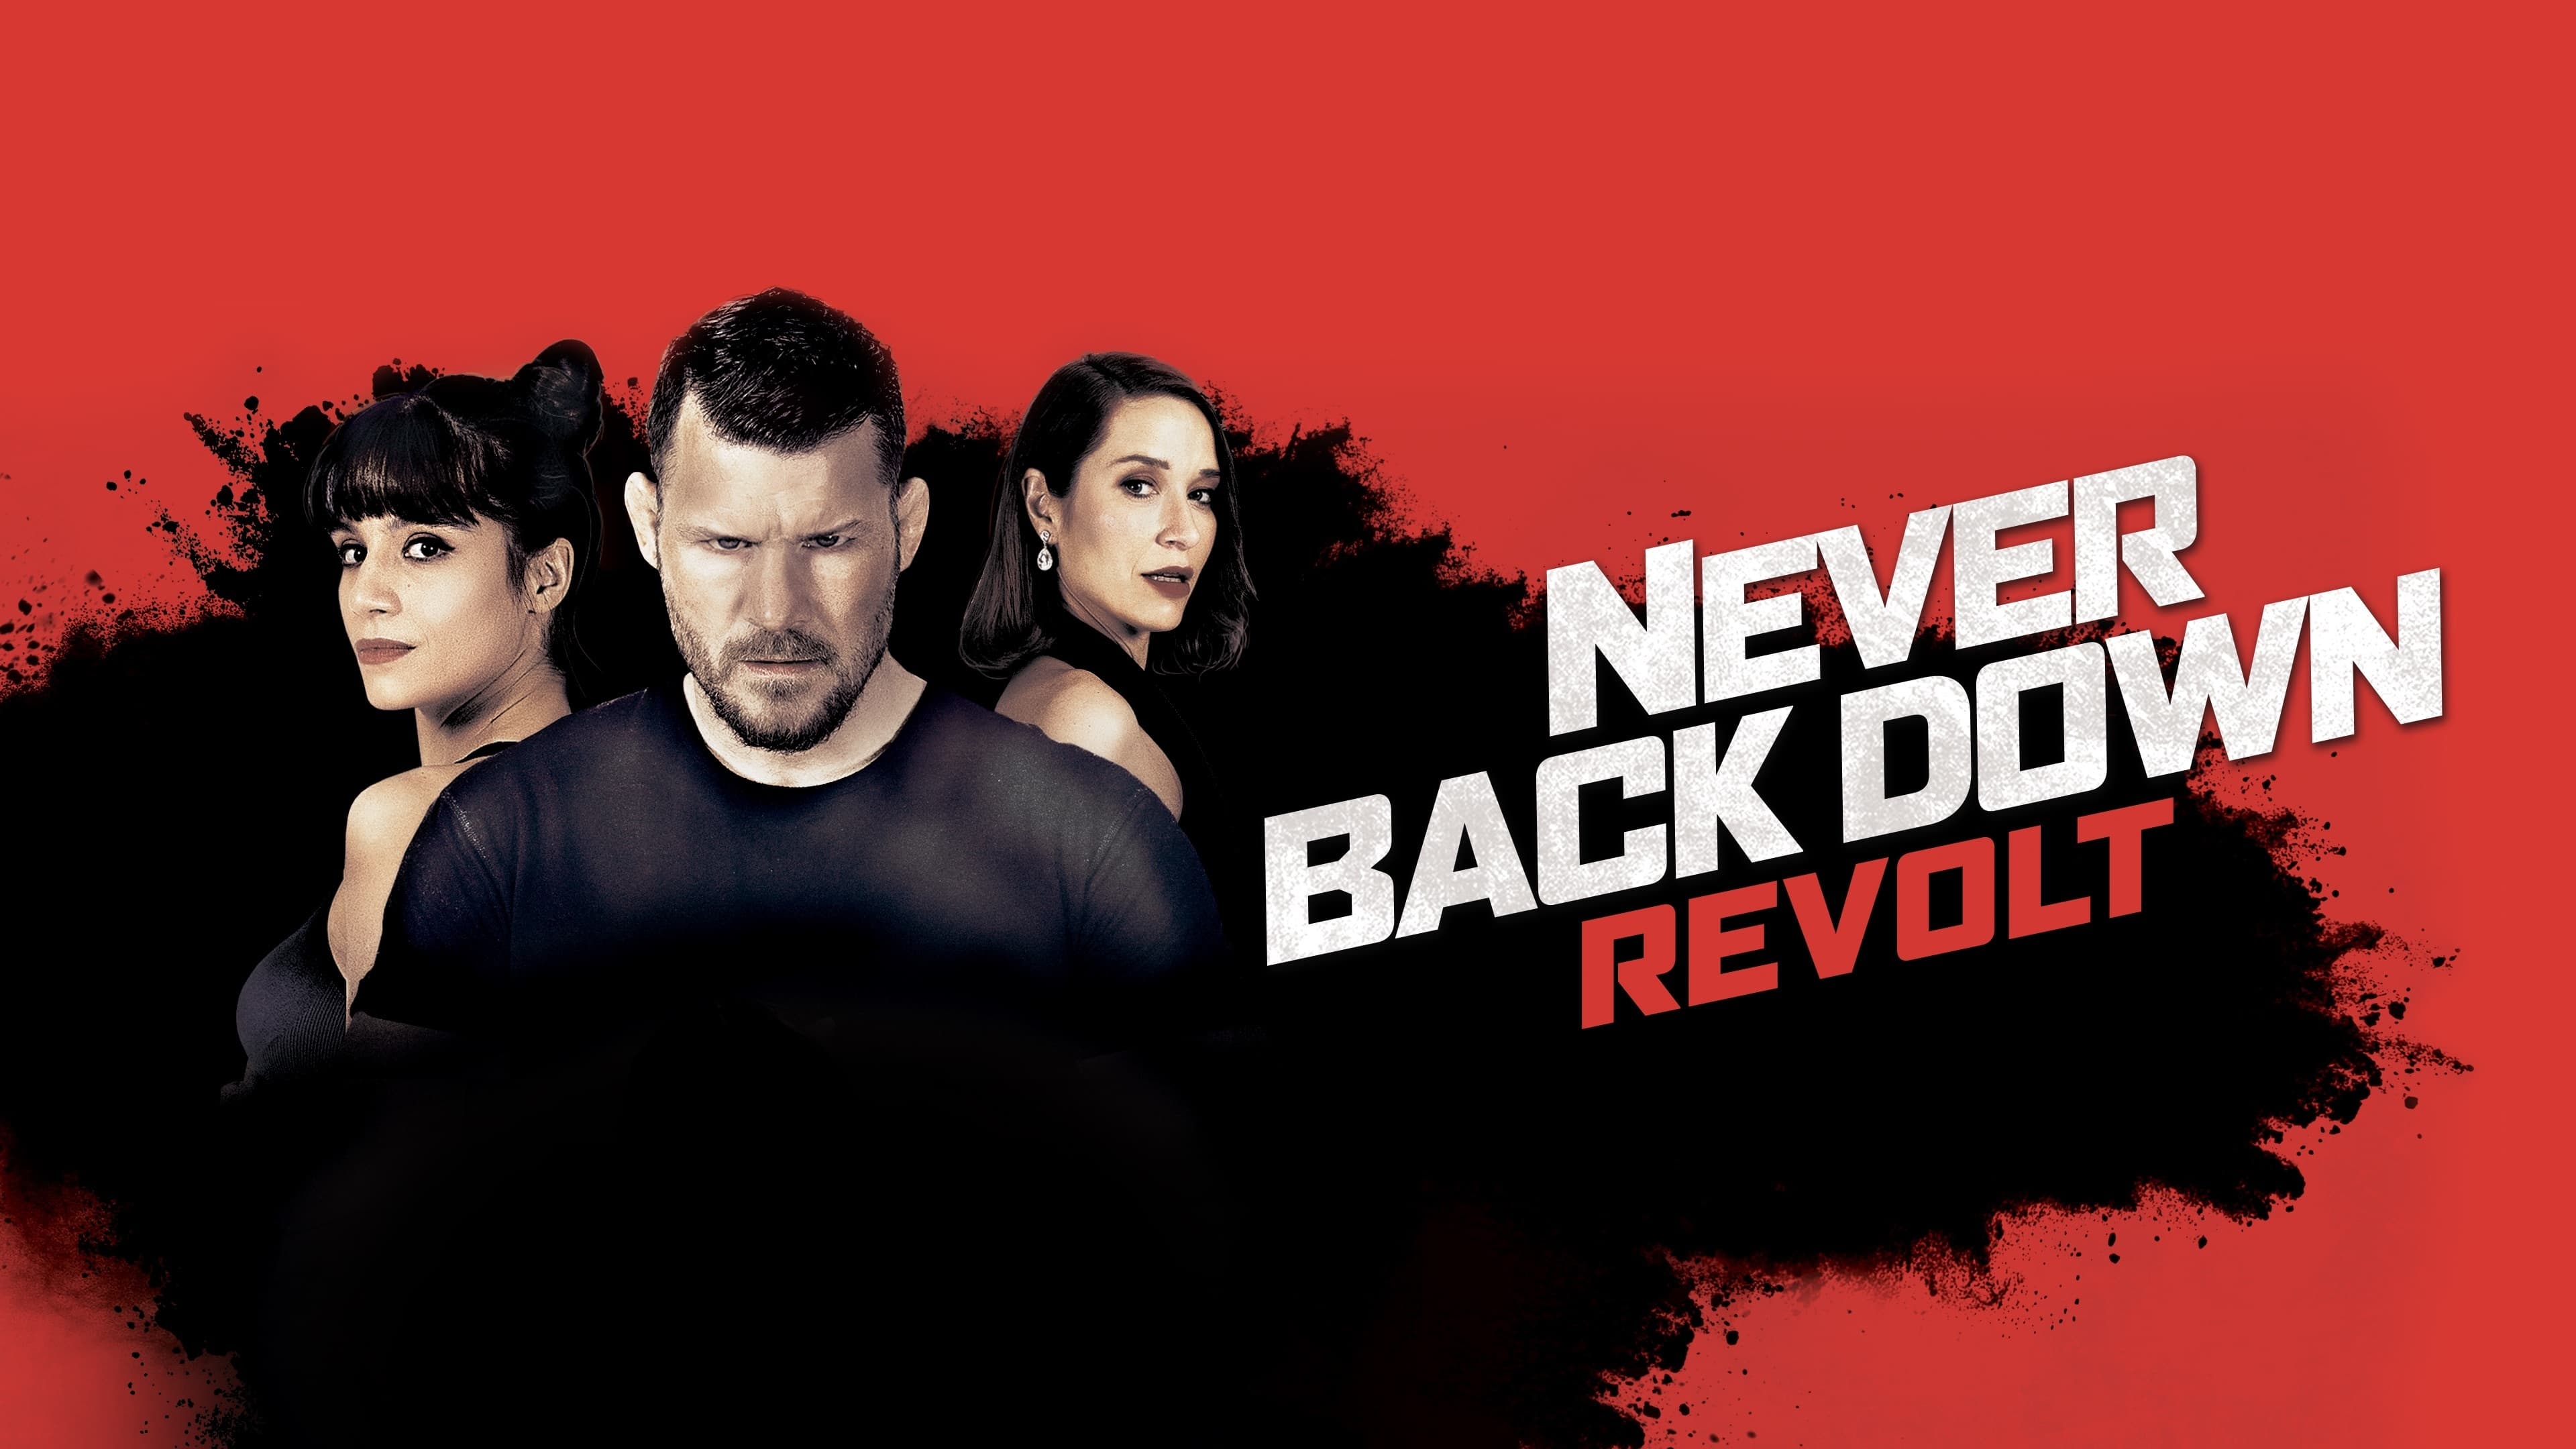 Never Back Down: La Révolte (2021)